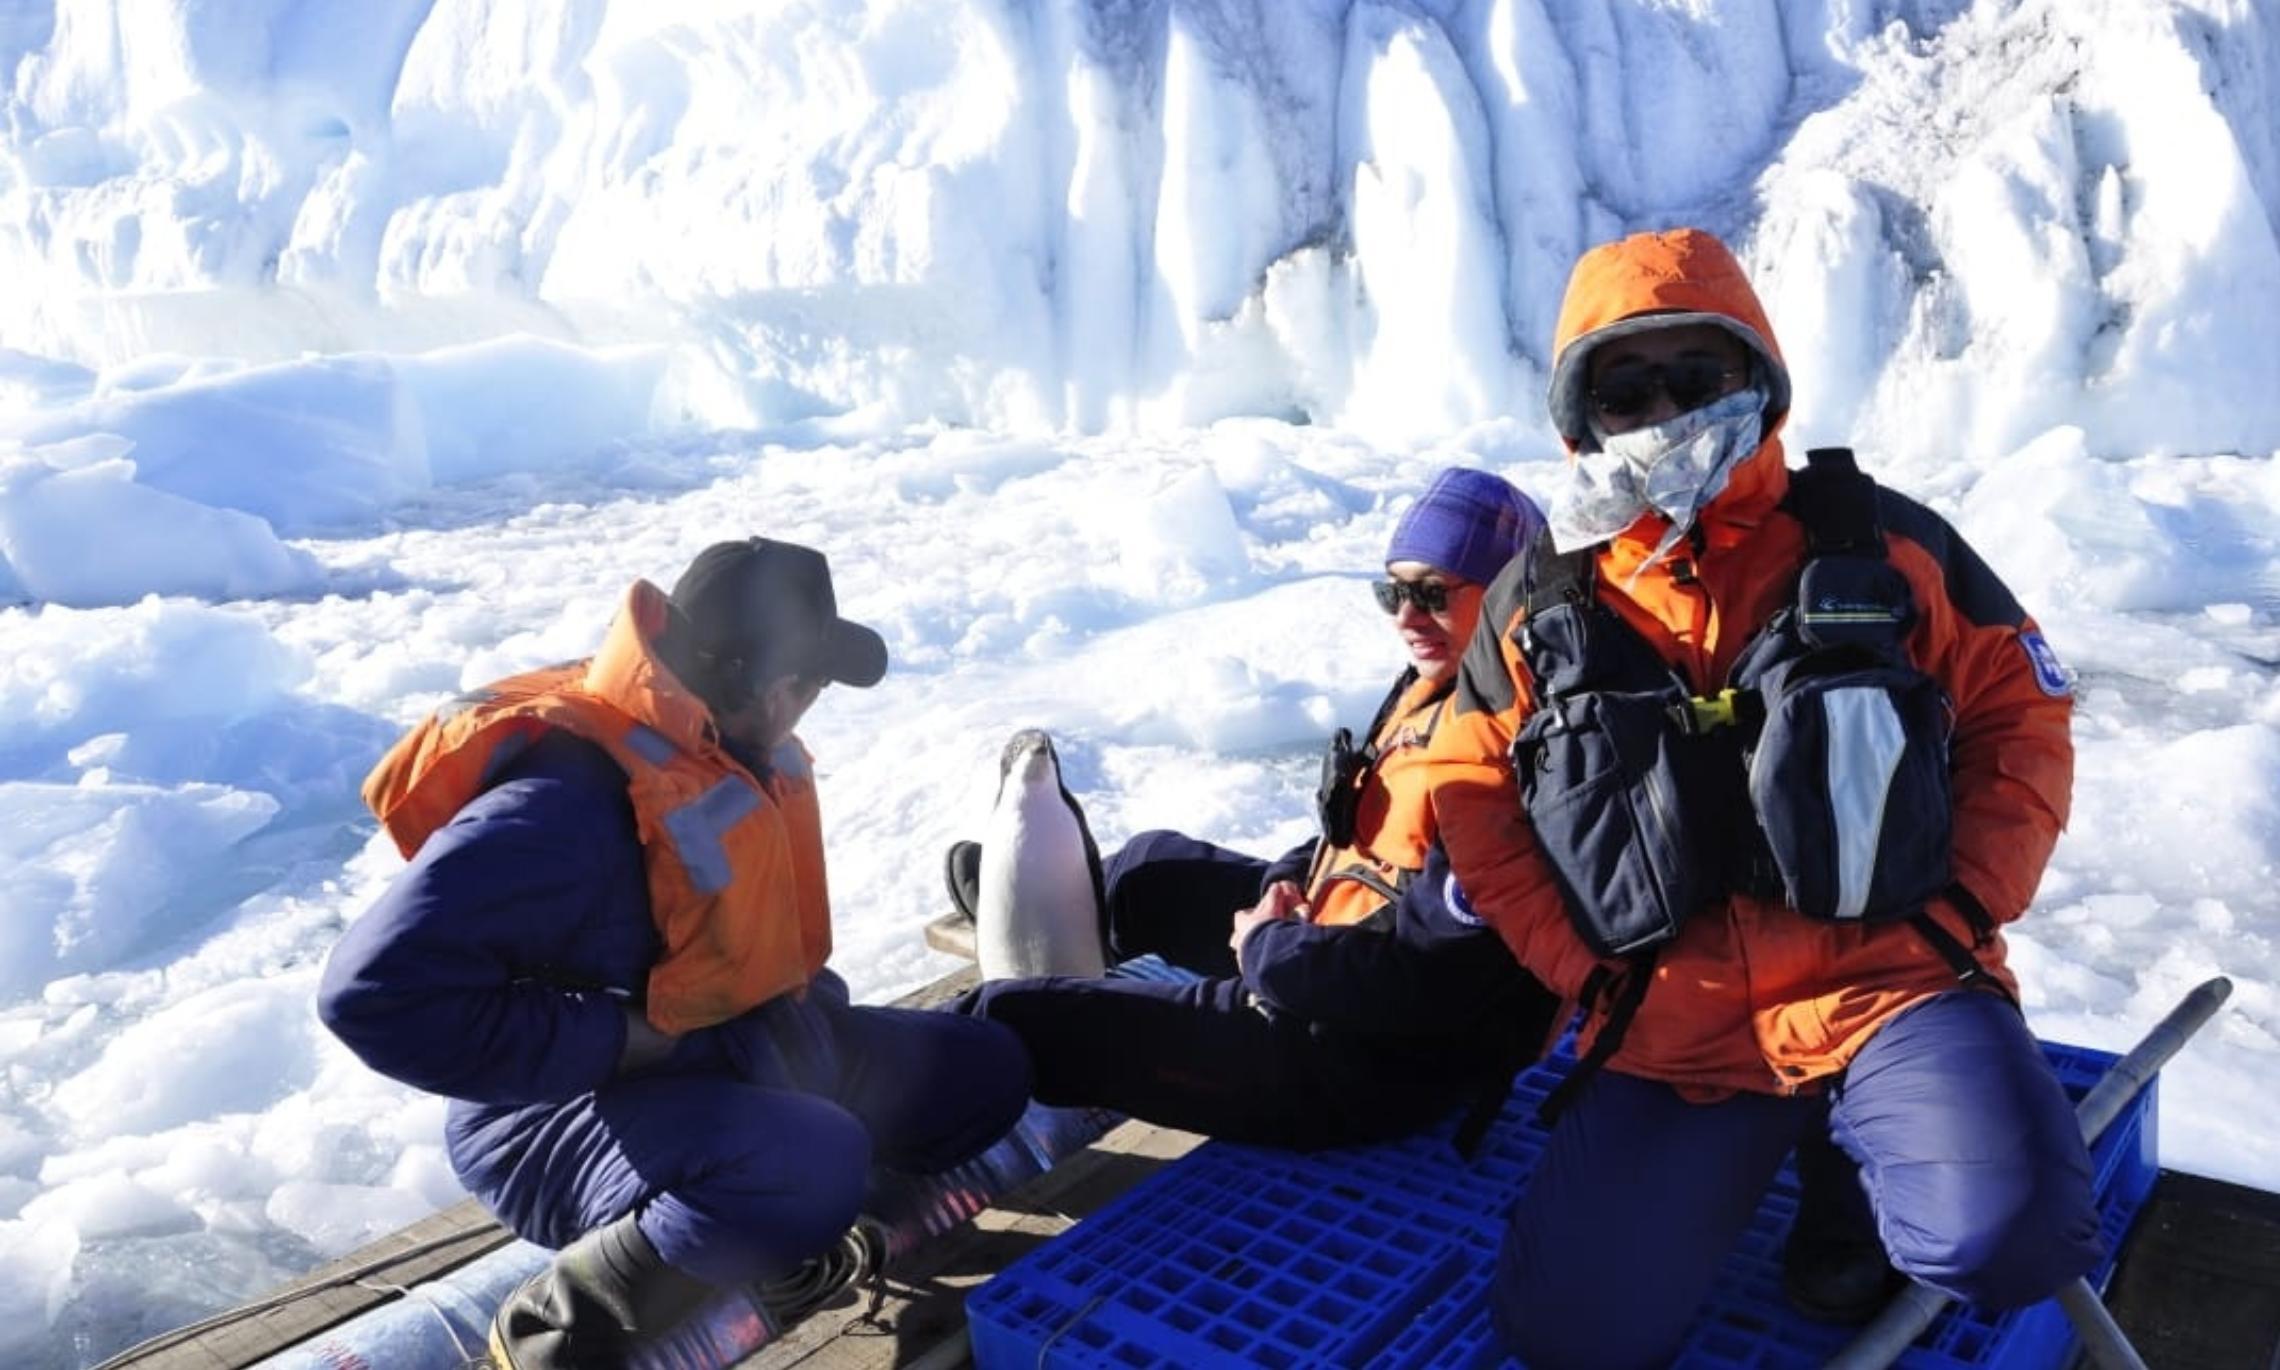 Самое поразительное в Антарктиде — взаимовыручка между людьми